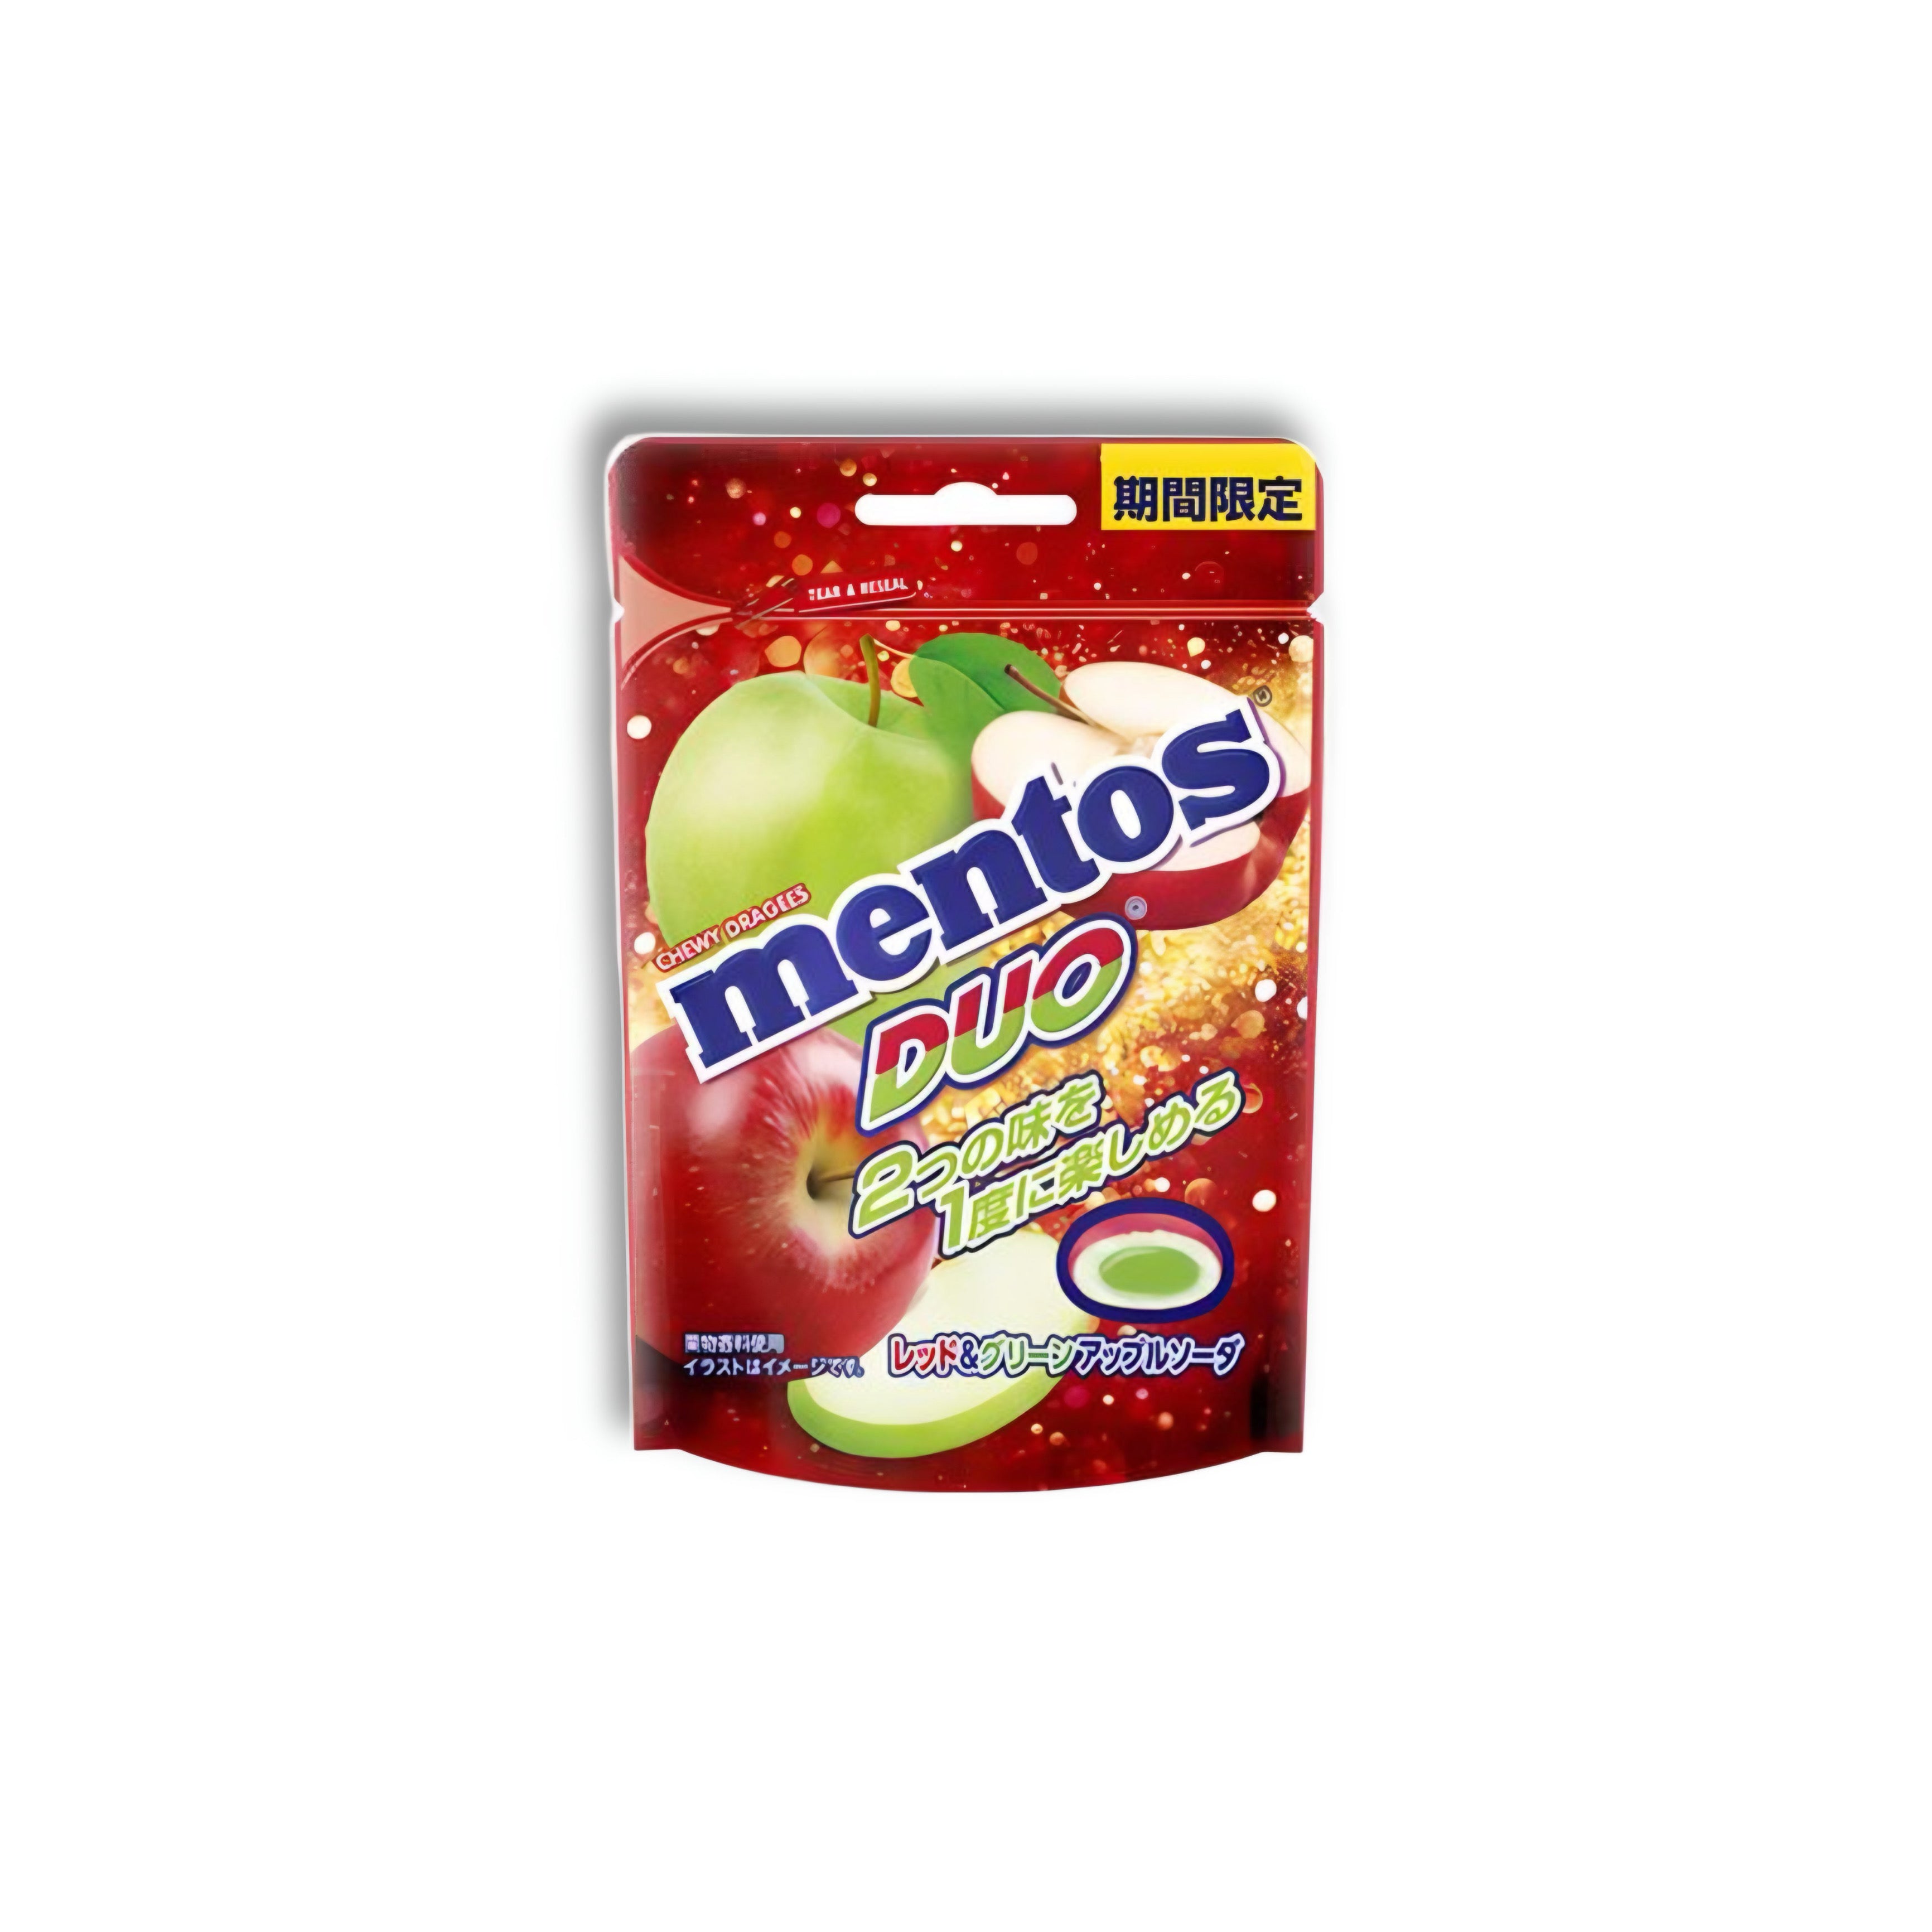 Mentos - Duo Apple